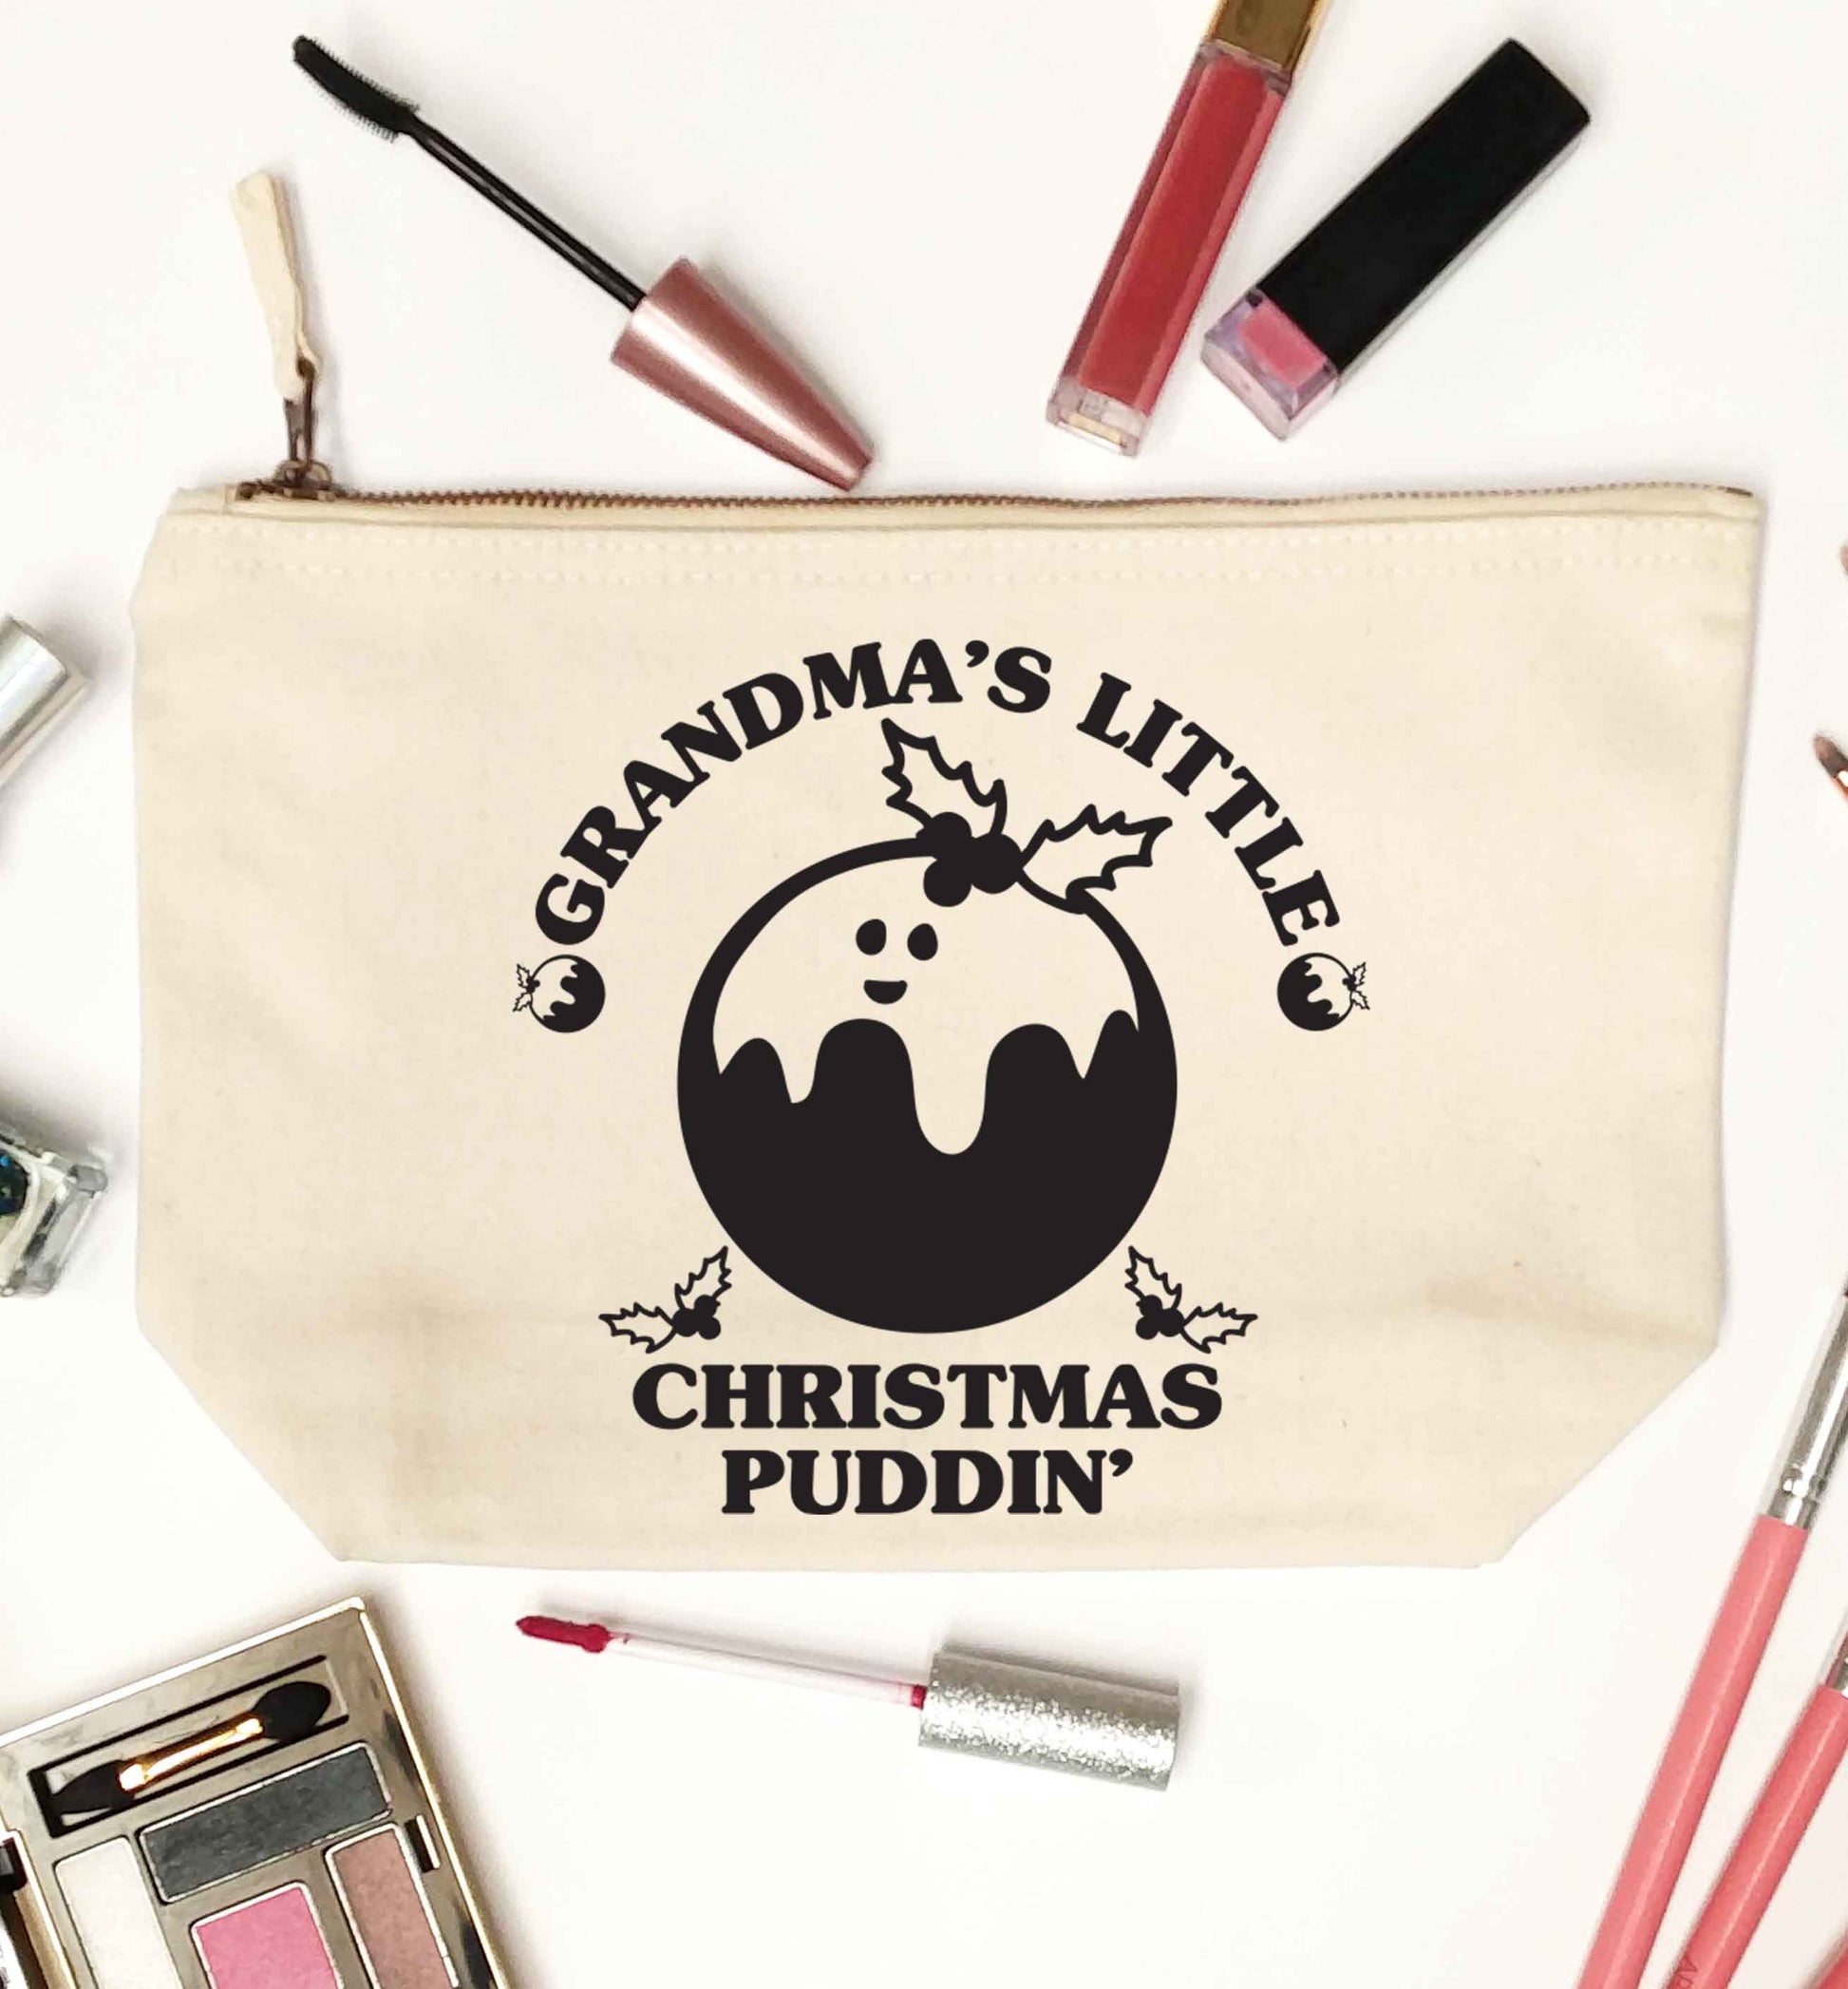 Grandma's little Christmas puddin' natural makeup bag